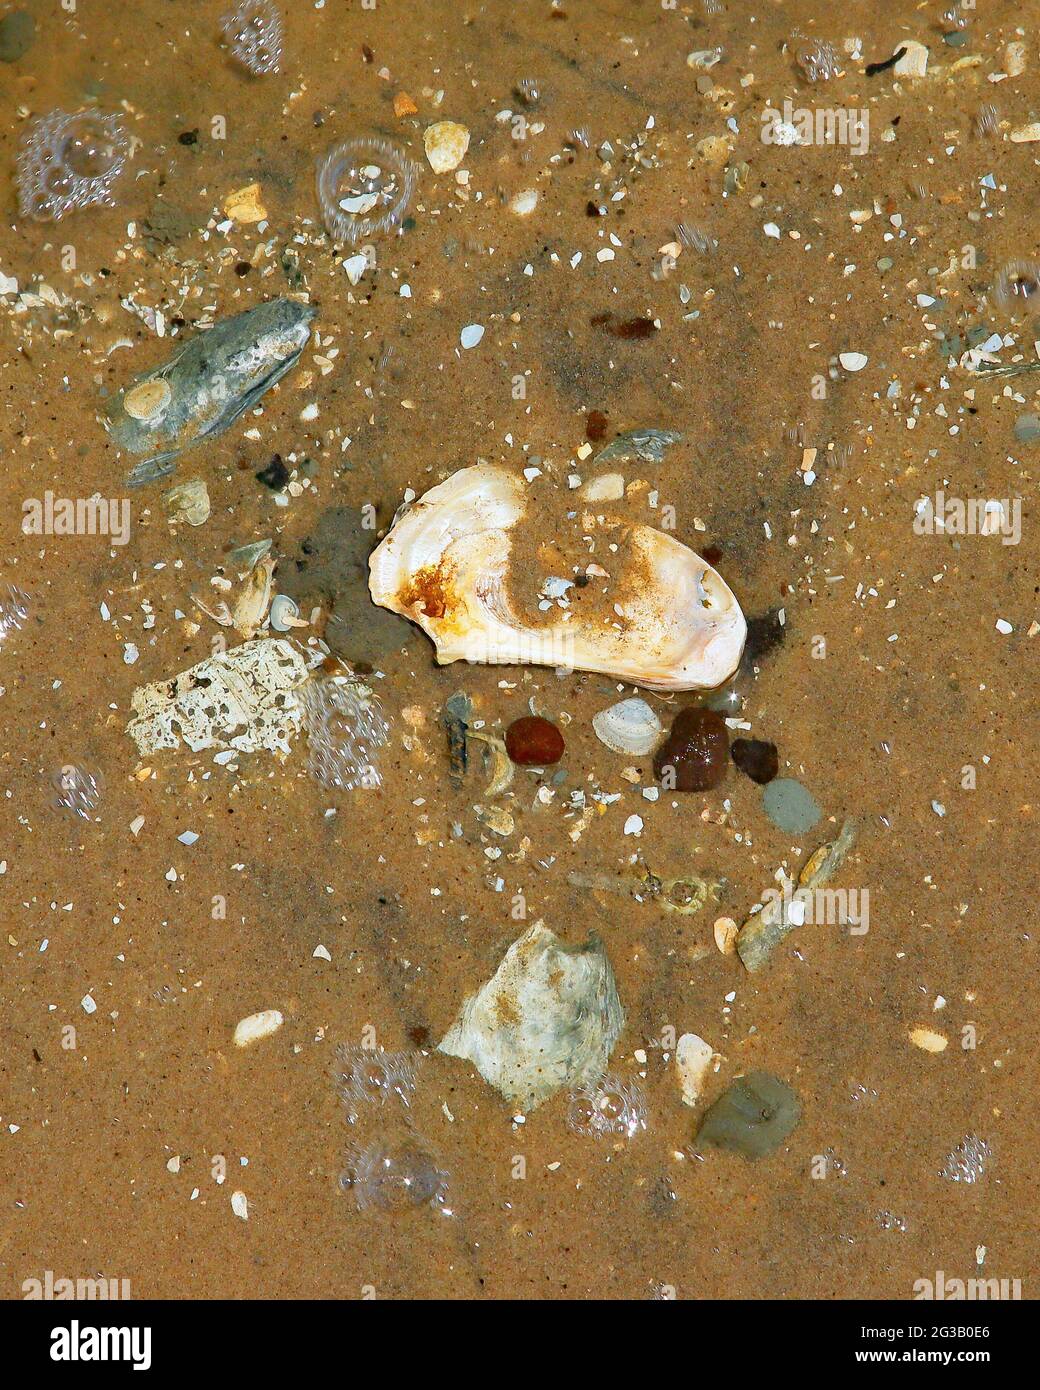 Conchas de mar, piedras en arena de playa húmeda, múltiples colores con agua en movimiento y burbujas alrededor de las piedras Foto de stock